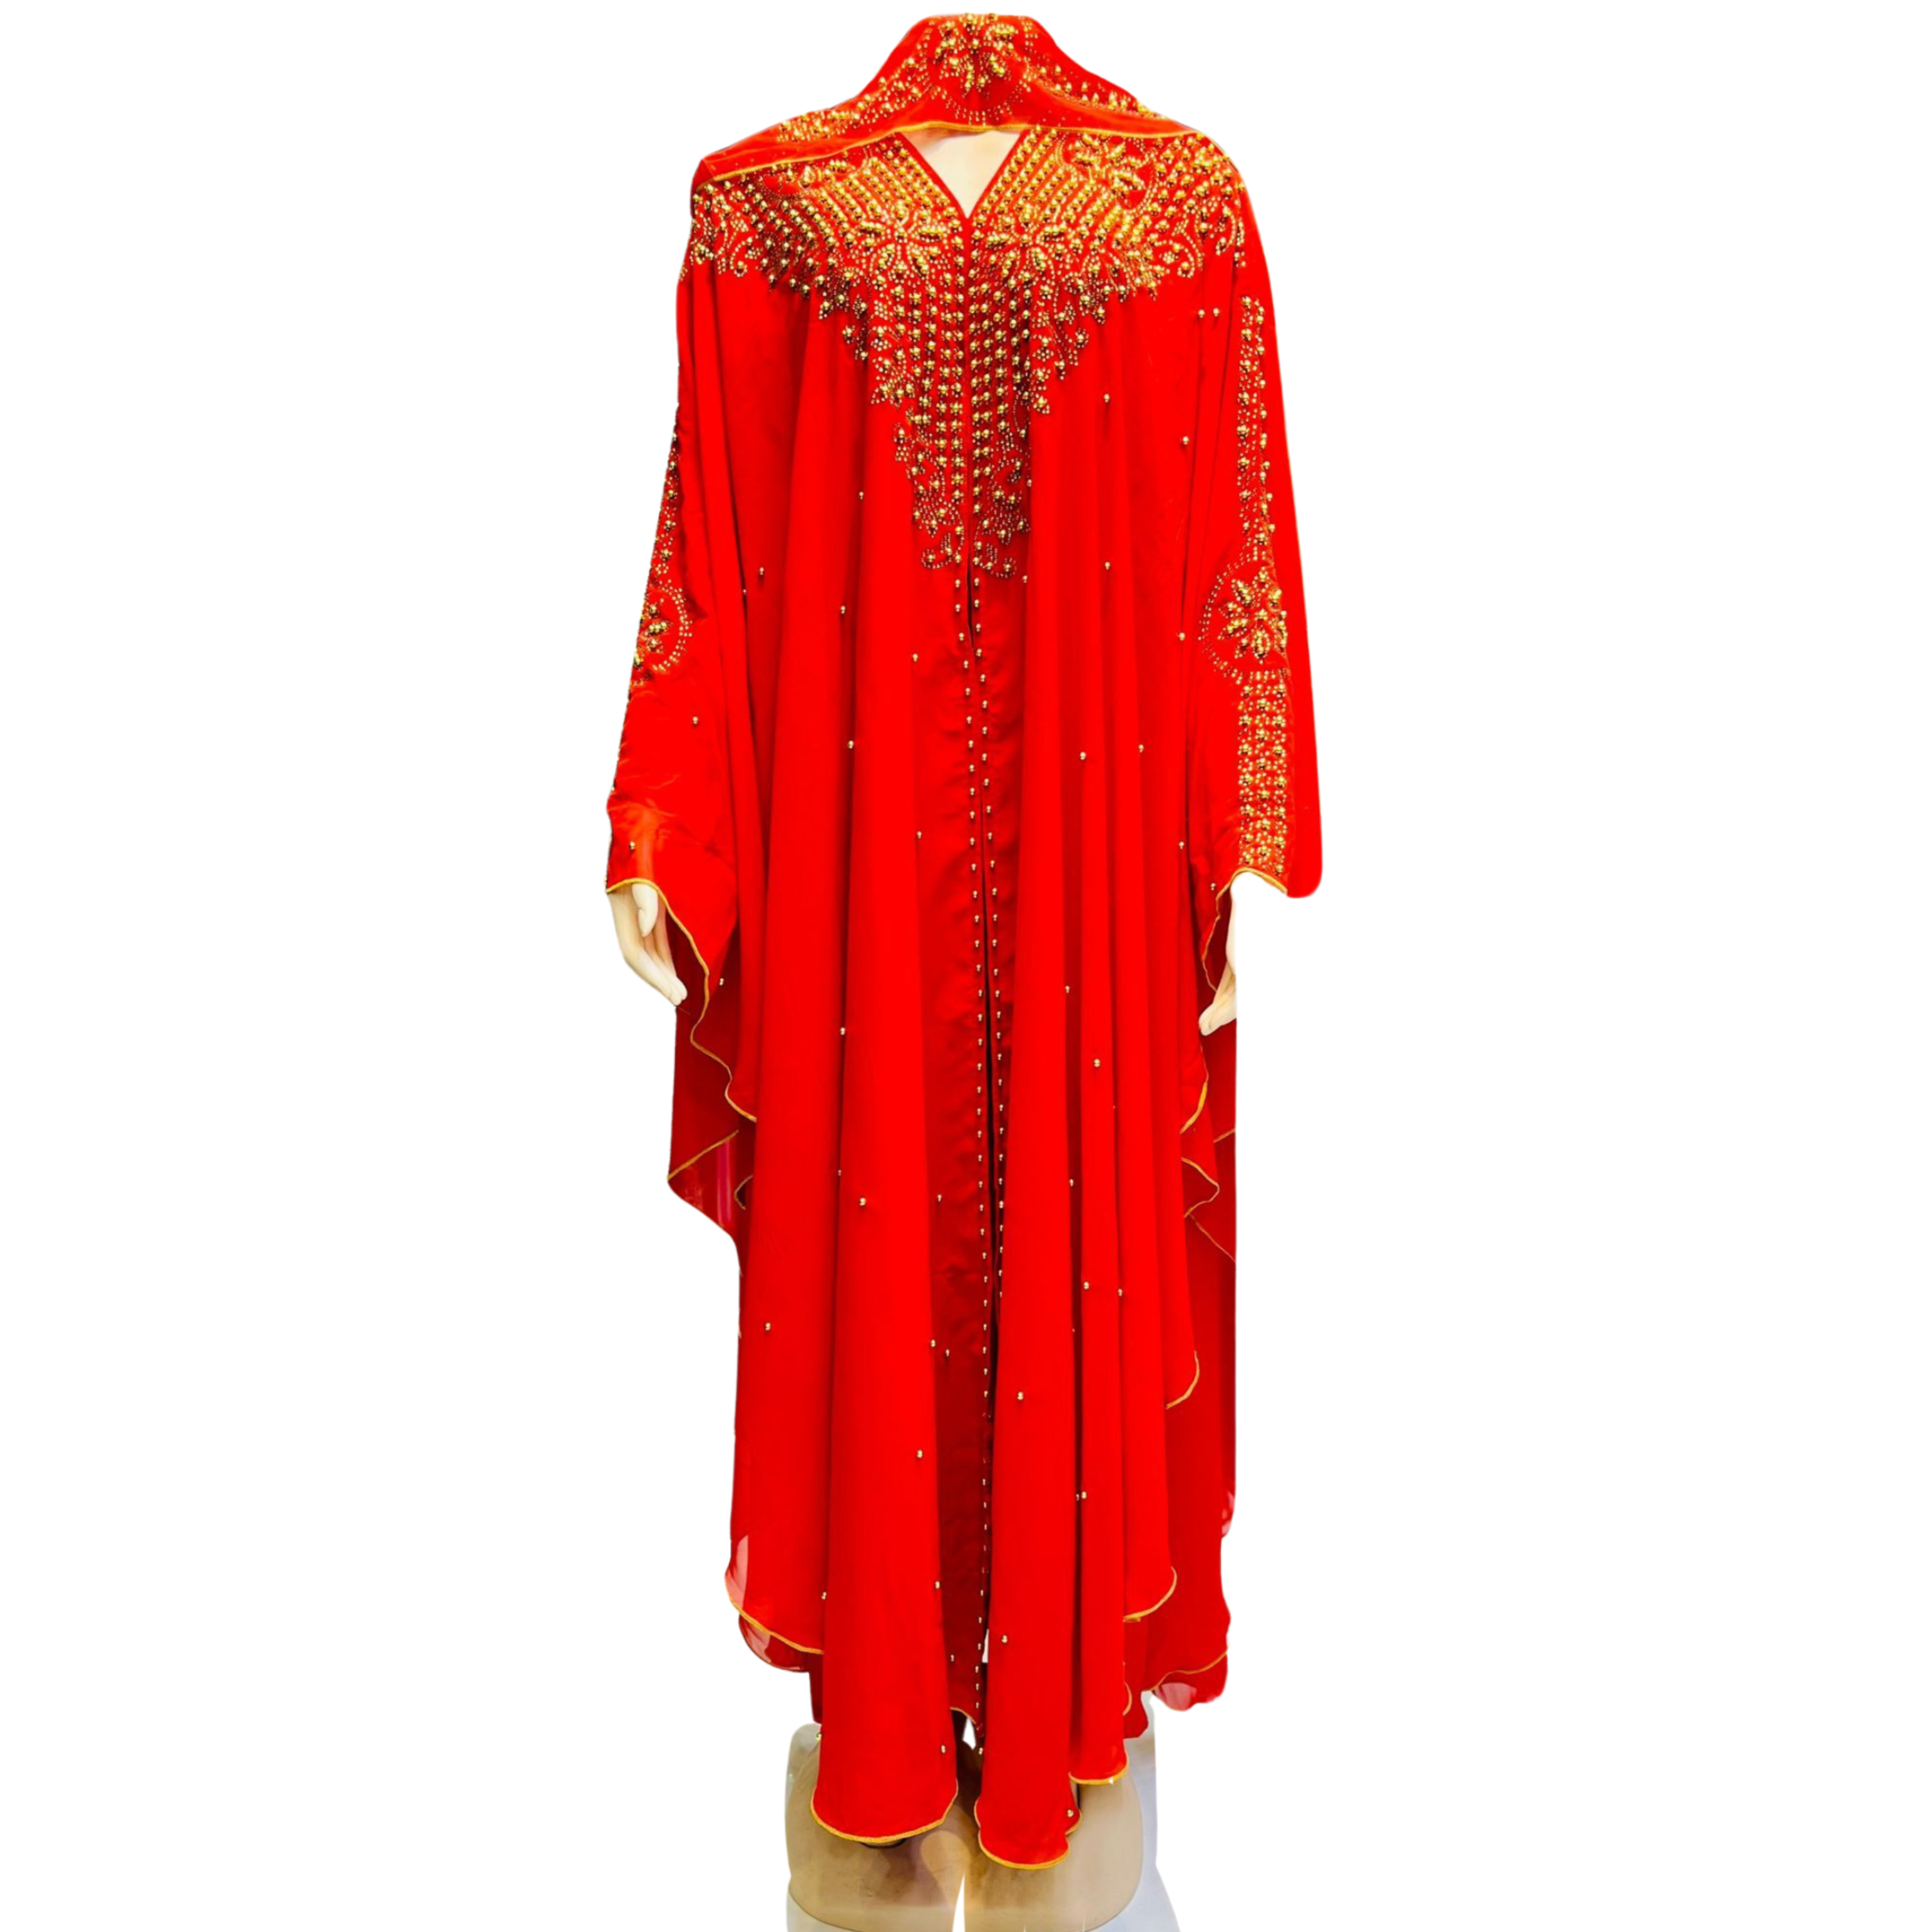 Blood Red Majesty with Gold Stitching Abaya